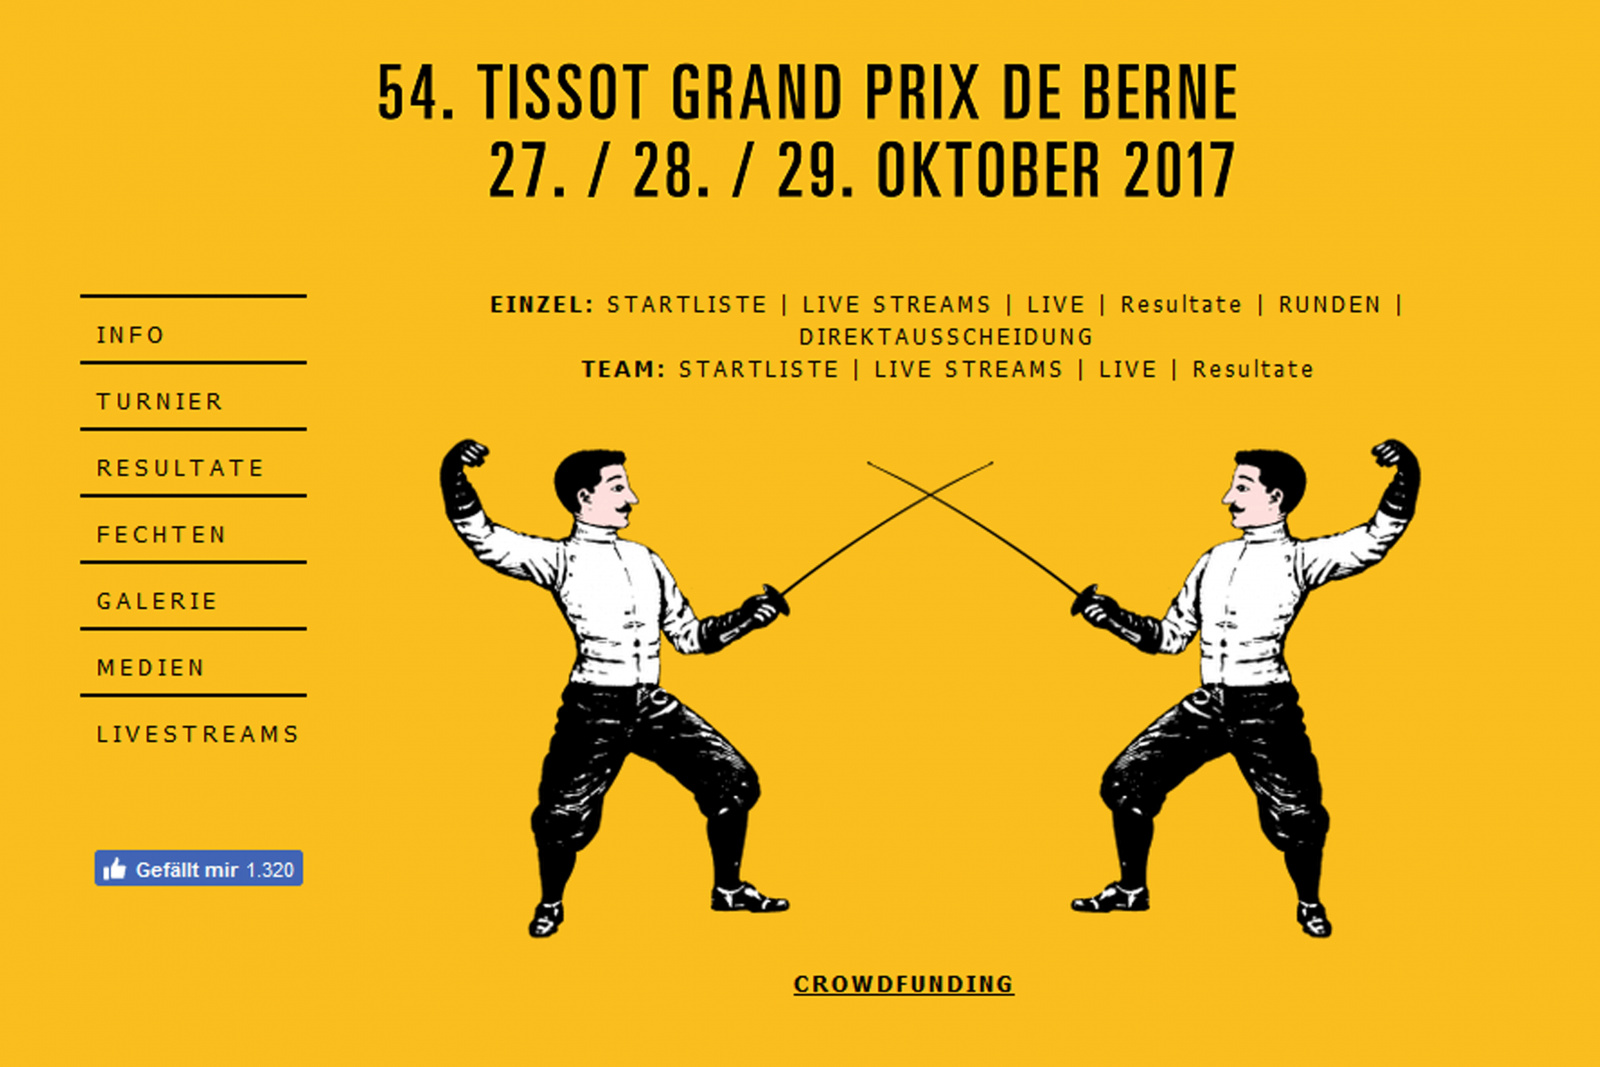 54. Tissot Grand Prix de Berne